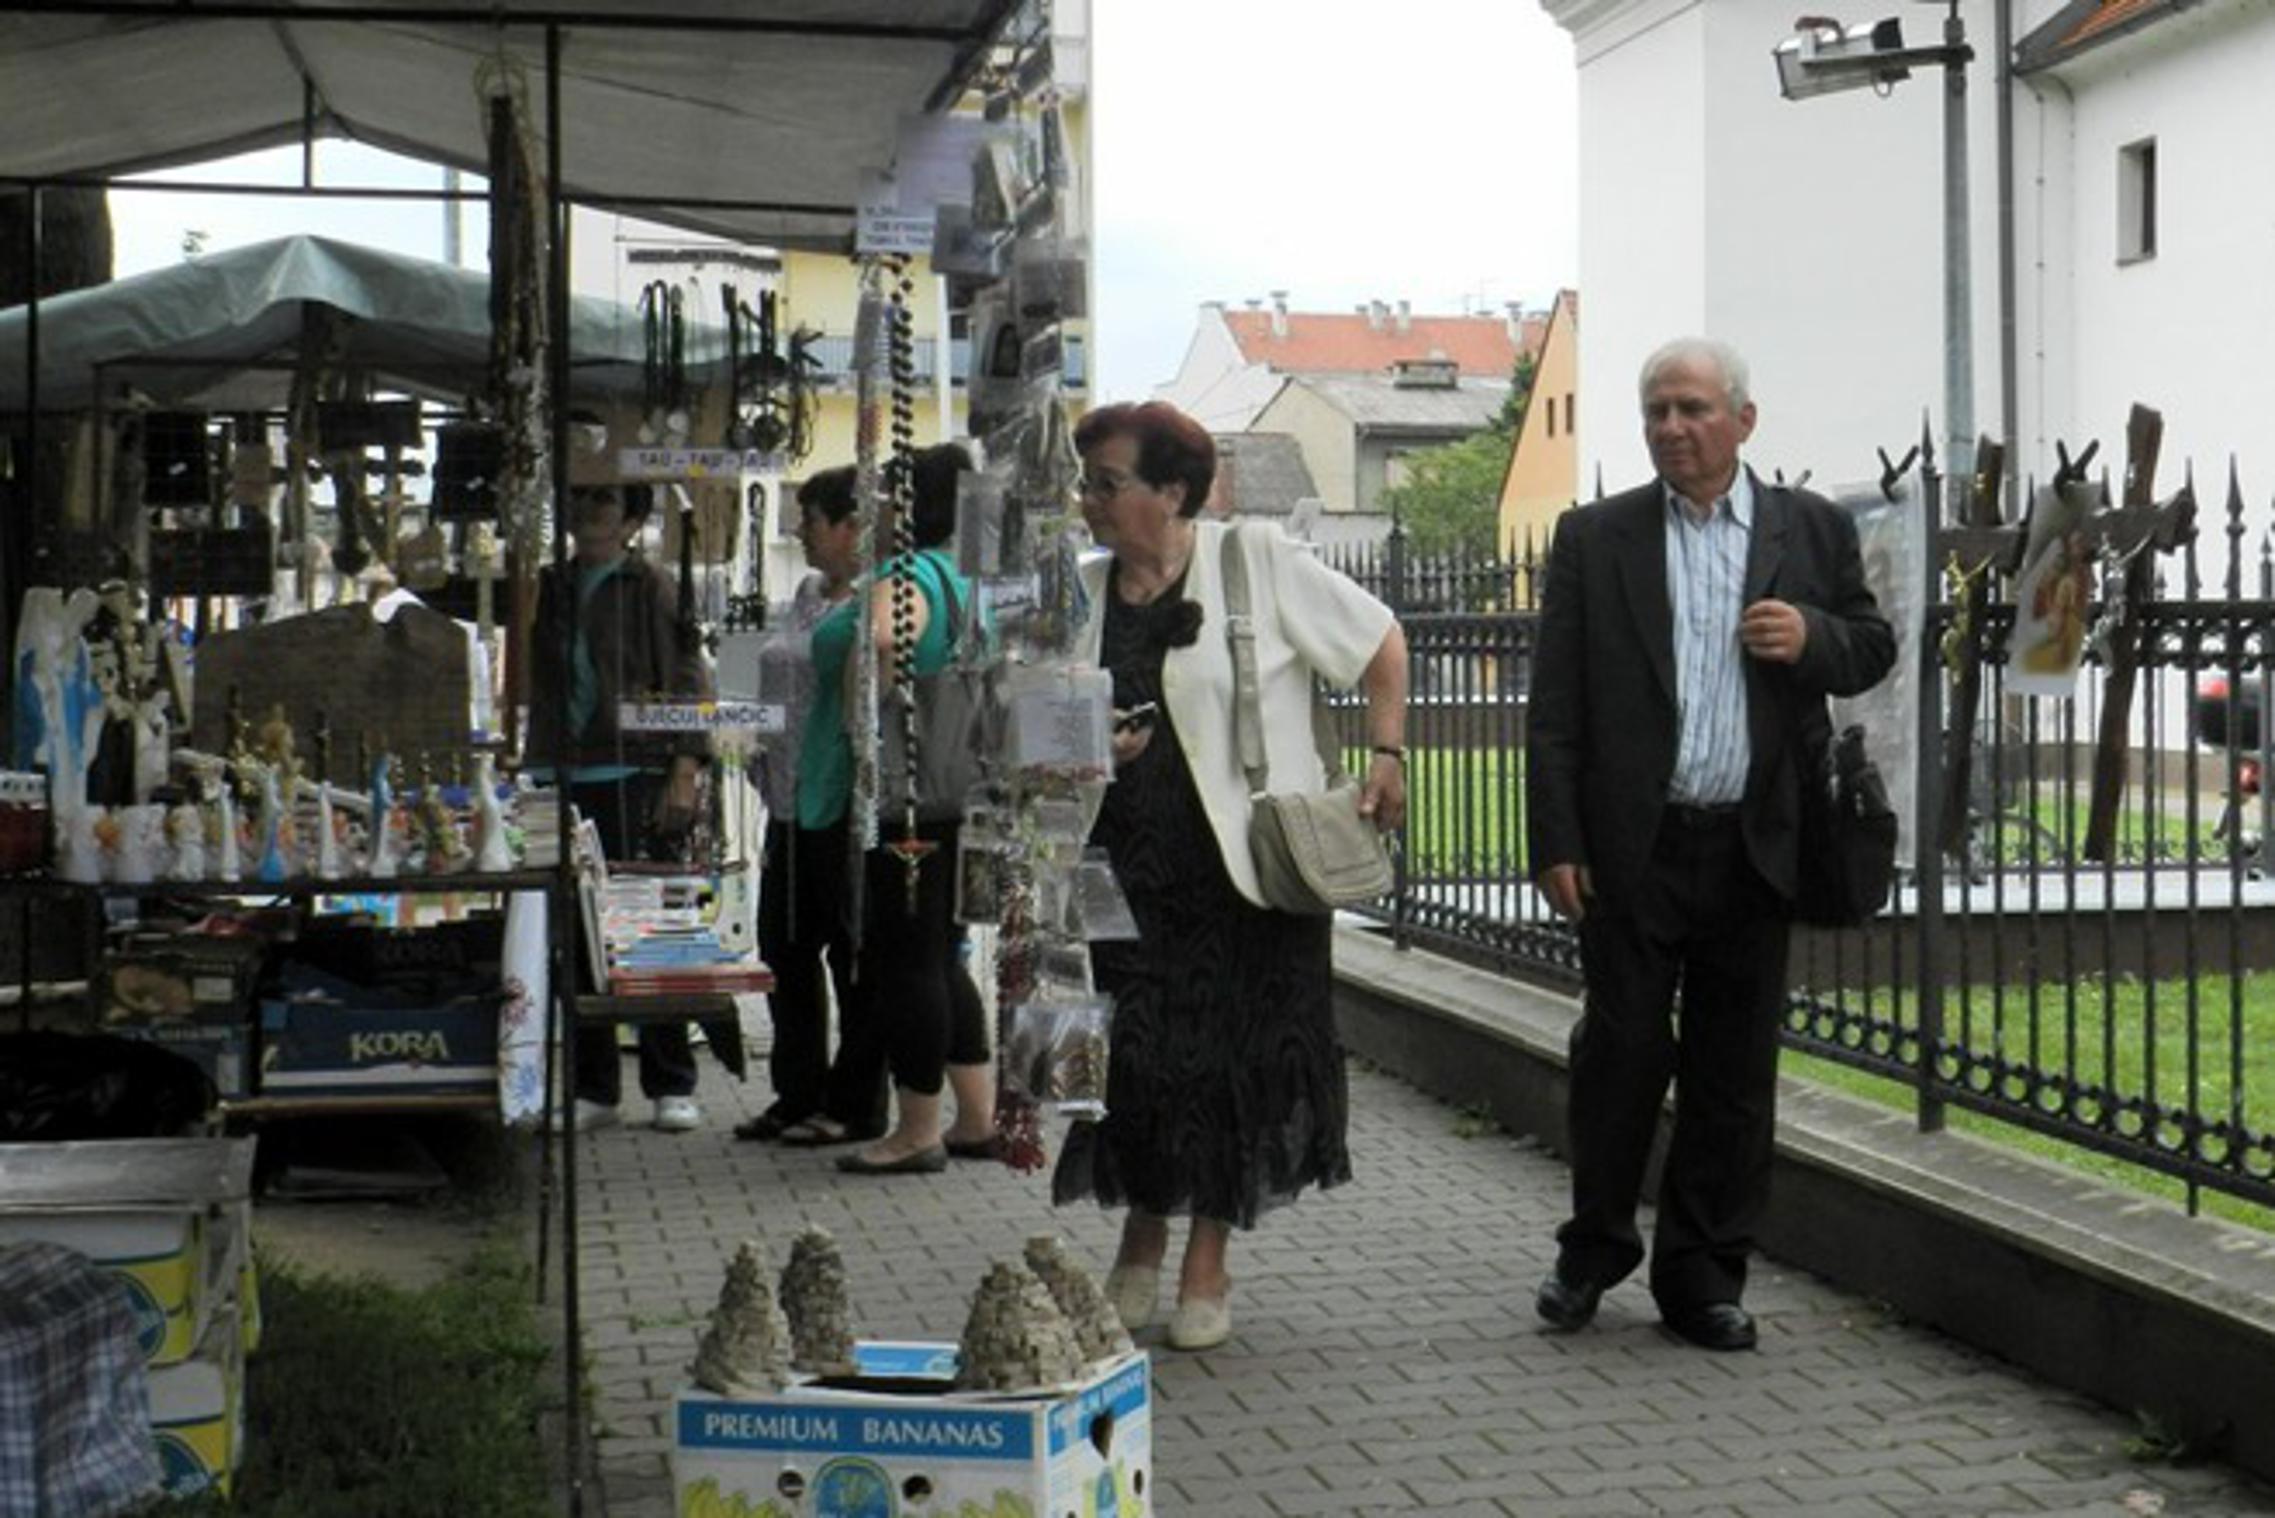 Prodaja crkvenih potrepština i suvenira u Gundulićevoj